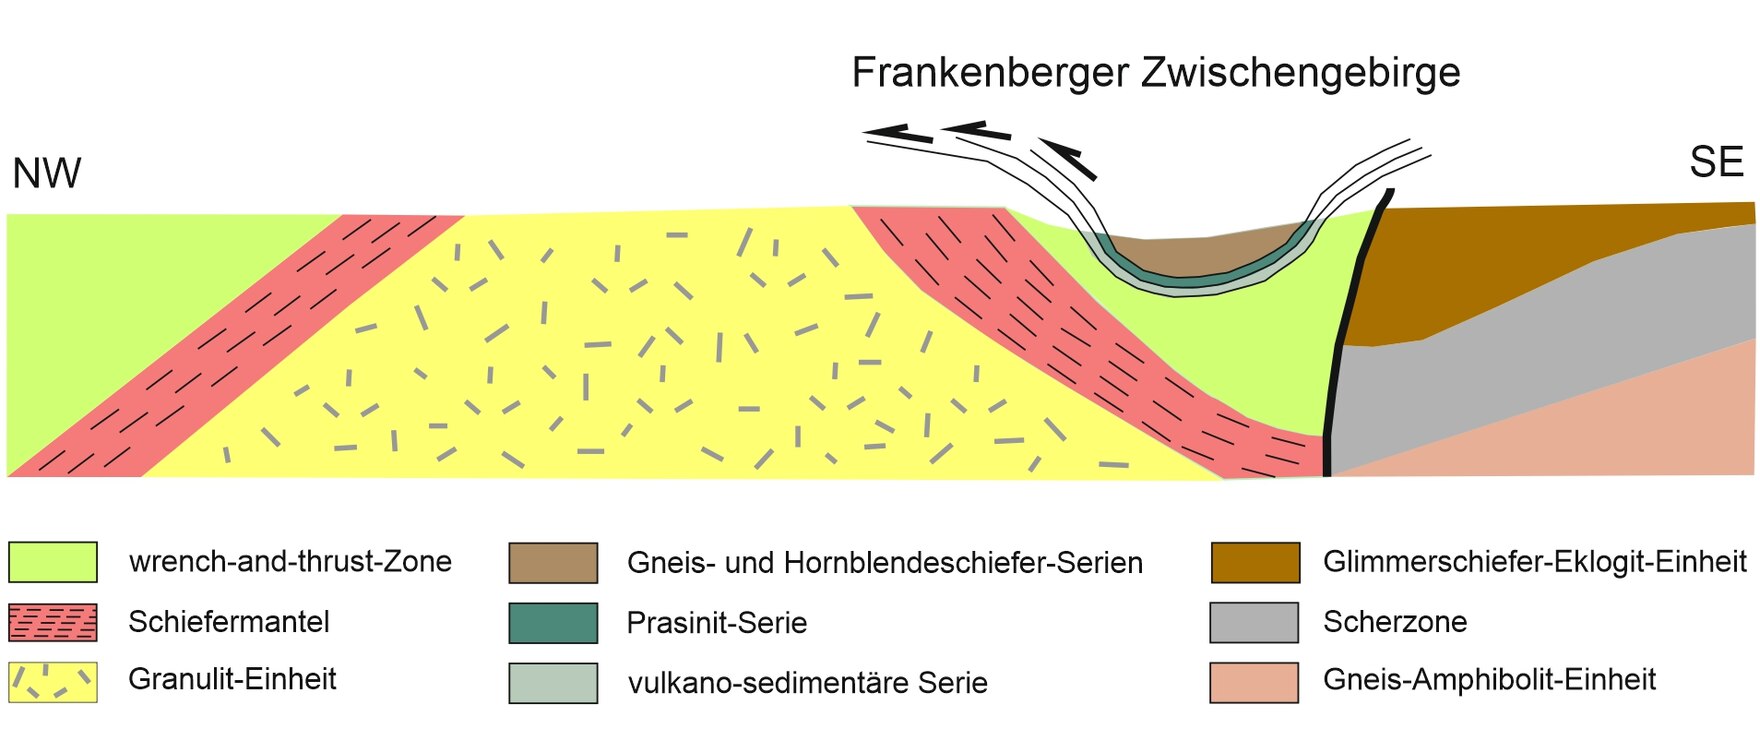 Profilschnitt, der die Deckenstruktur des Frankenberger Zwischengebirges zeigt nach Stephan et al. (2015).